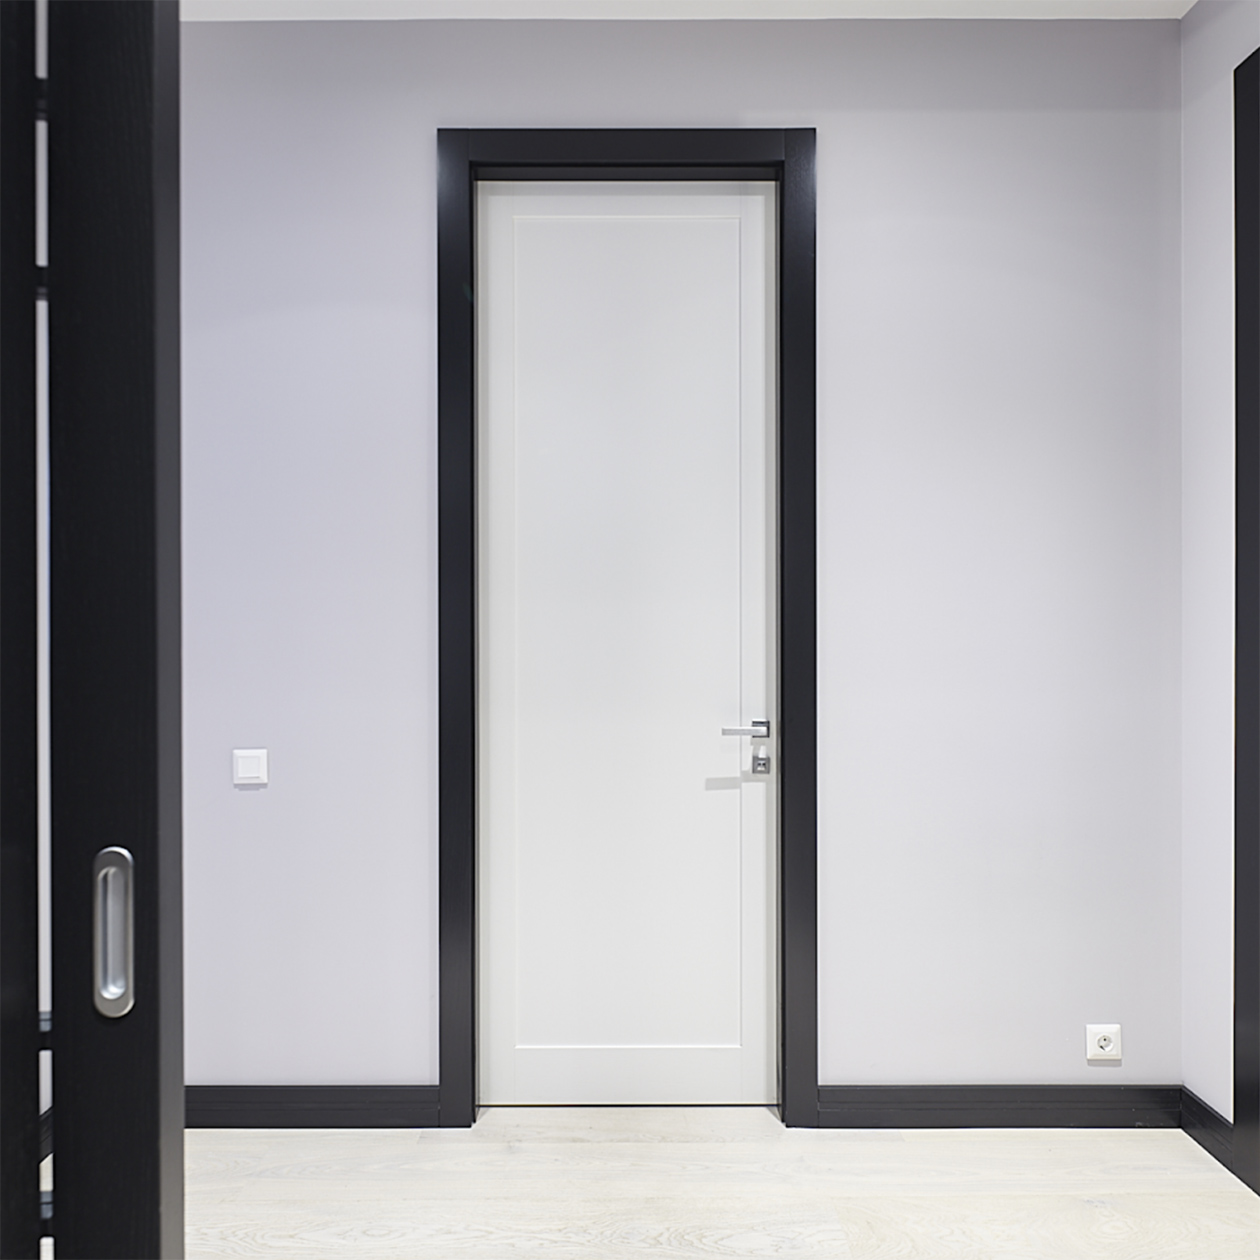 Черный цвет будет красиво контрастировать со светлыми стенами. Фотография: art-doors.ru